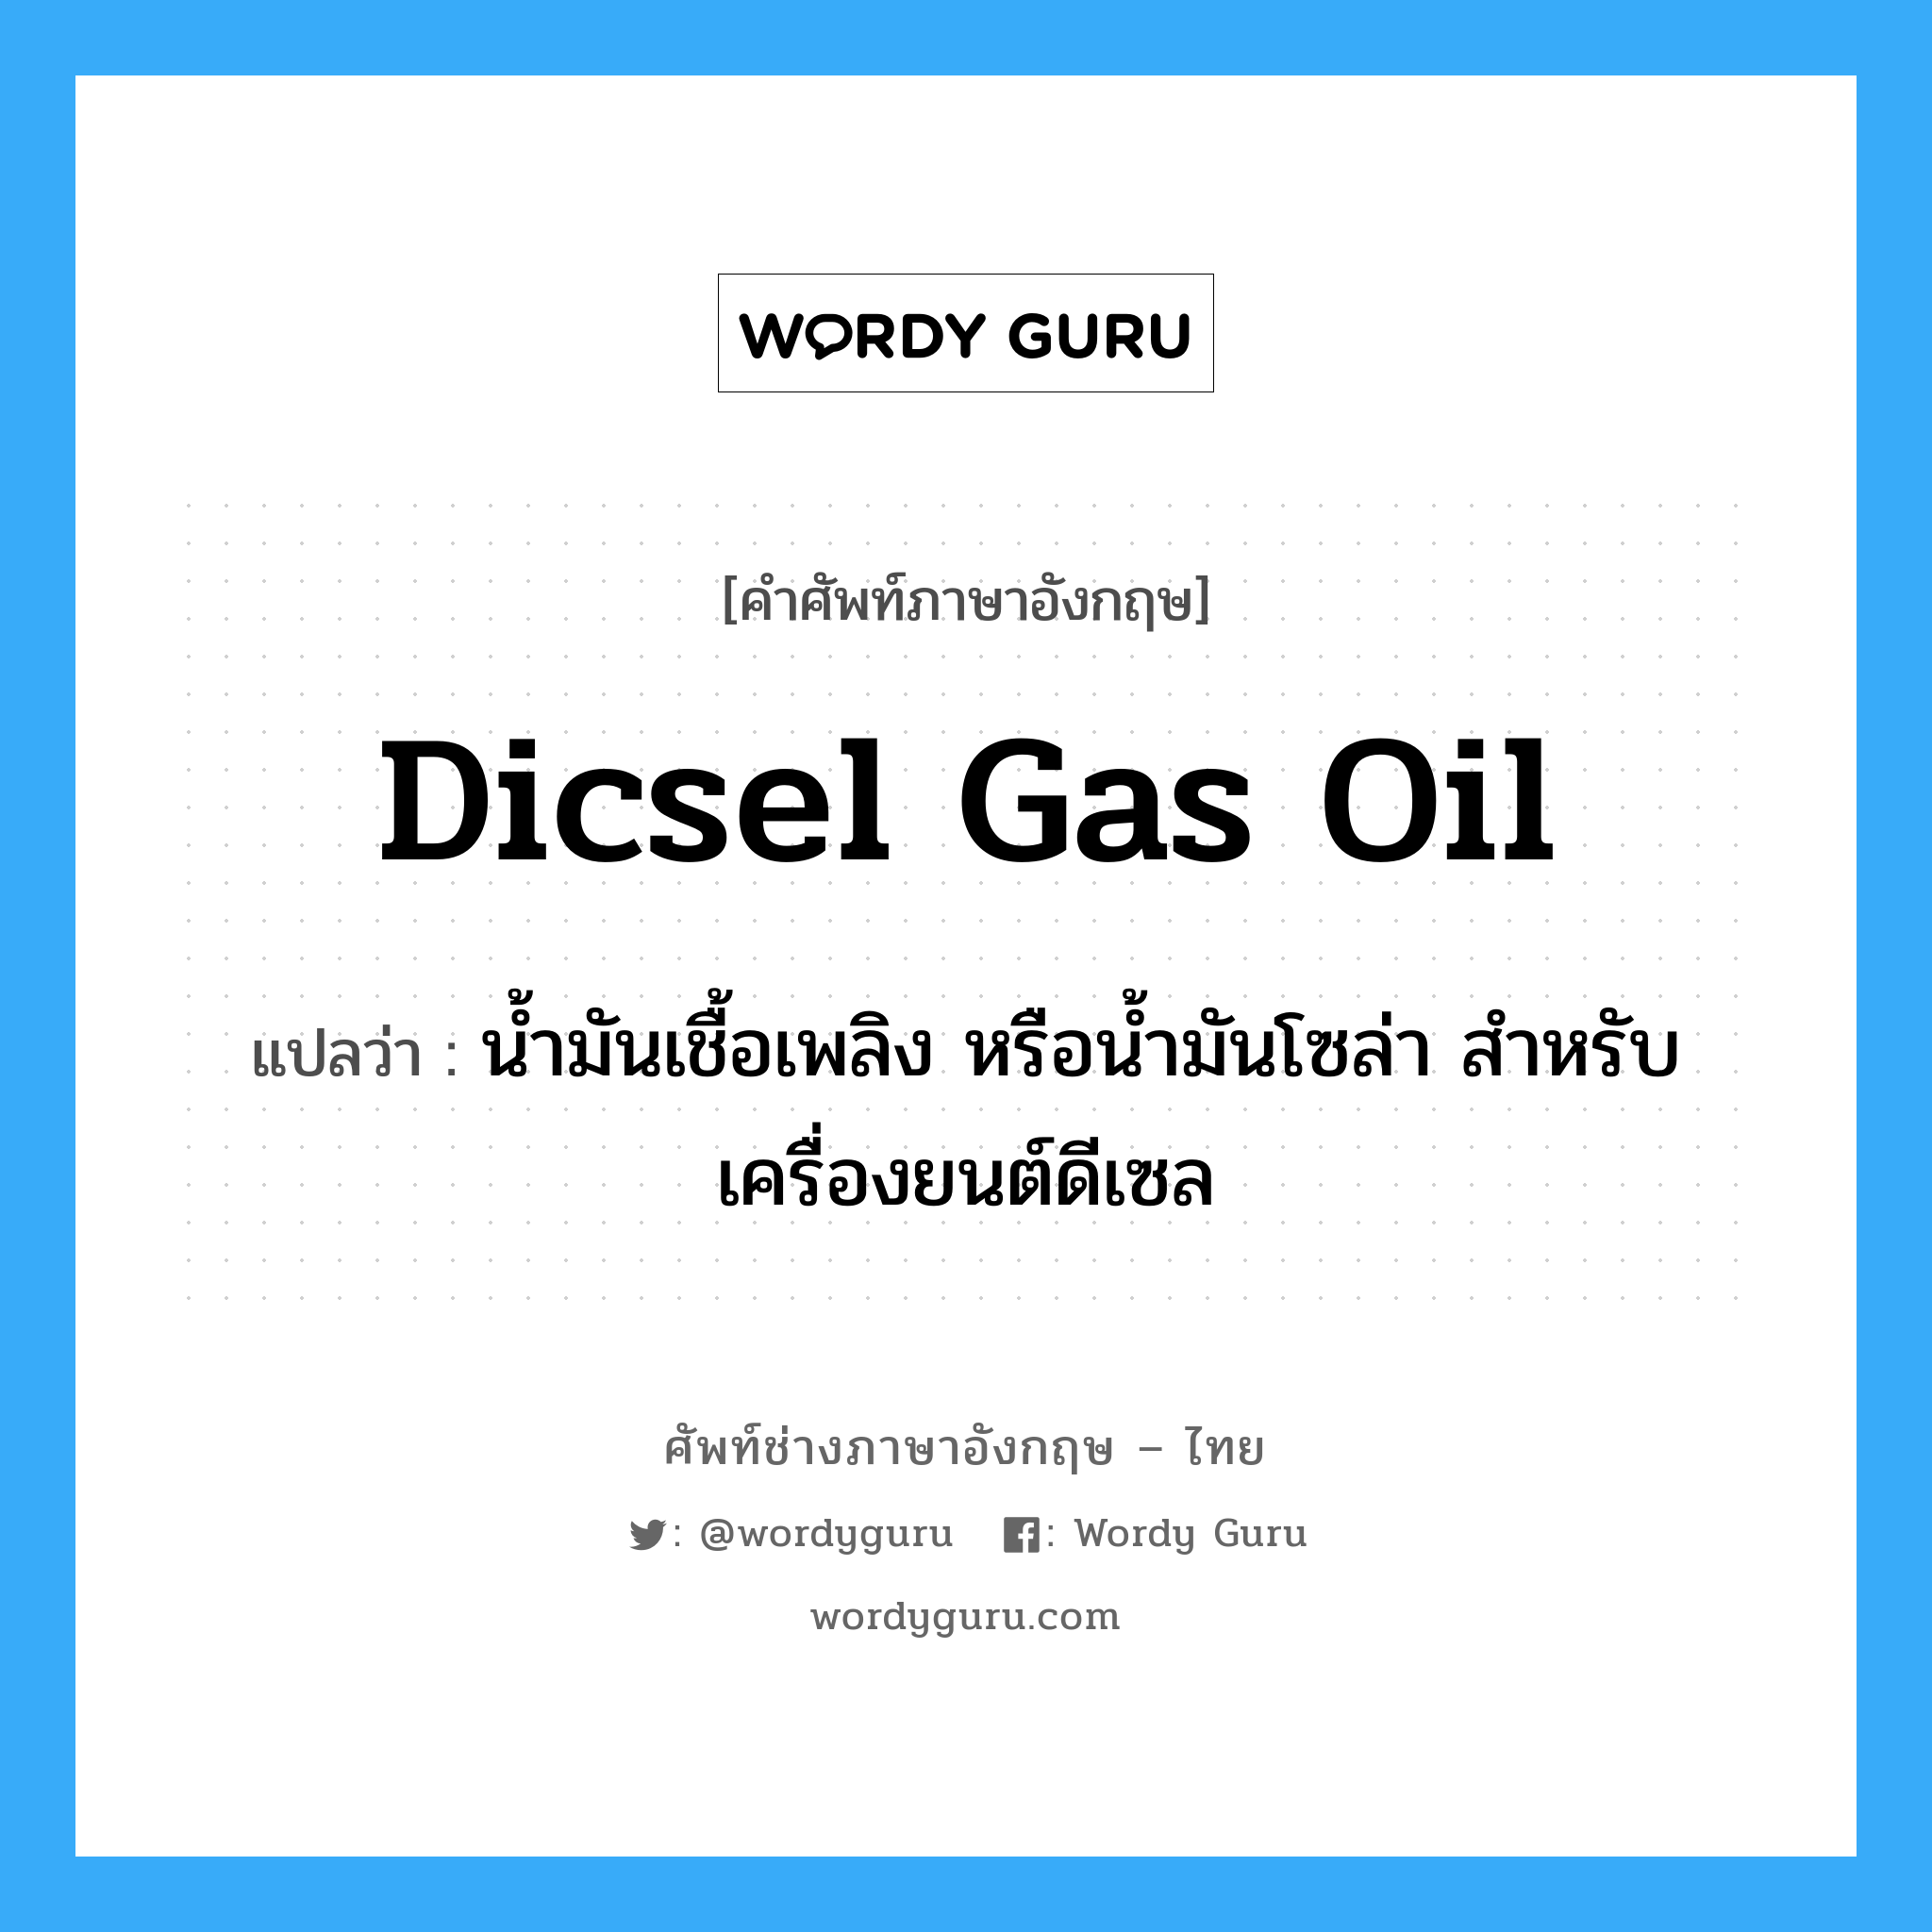 Dicsel gas oil แปลว่า?, คำศัพท์ช่างภาษาอังกฤษ - ไทย Dicsel gas oil คำศัพท์ภาษาอังกฤษ Dicsel gas oil แปลว่า น้ำมันเชื้อเพลิง หรือน้ำมันโซล่า สำหรับเครื่องยนต์ดีเซล